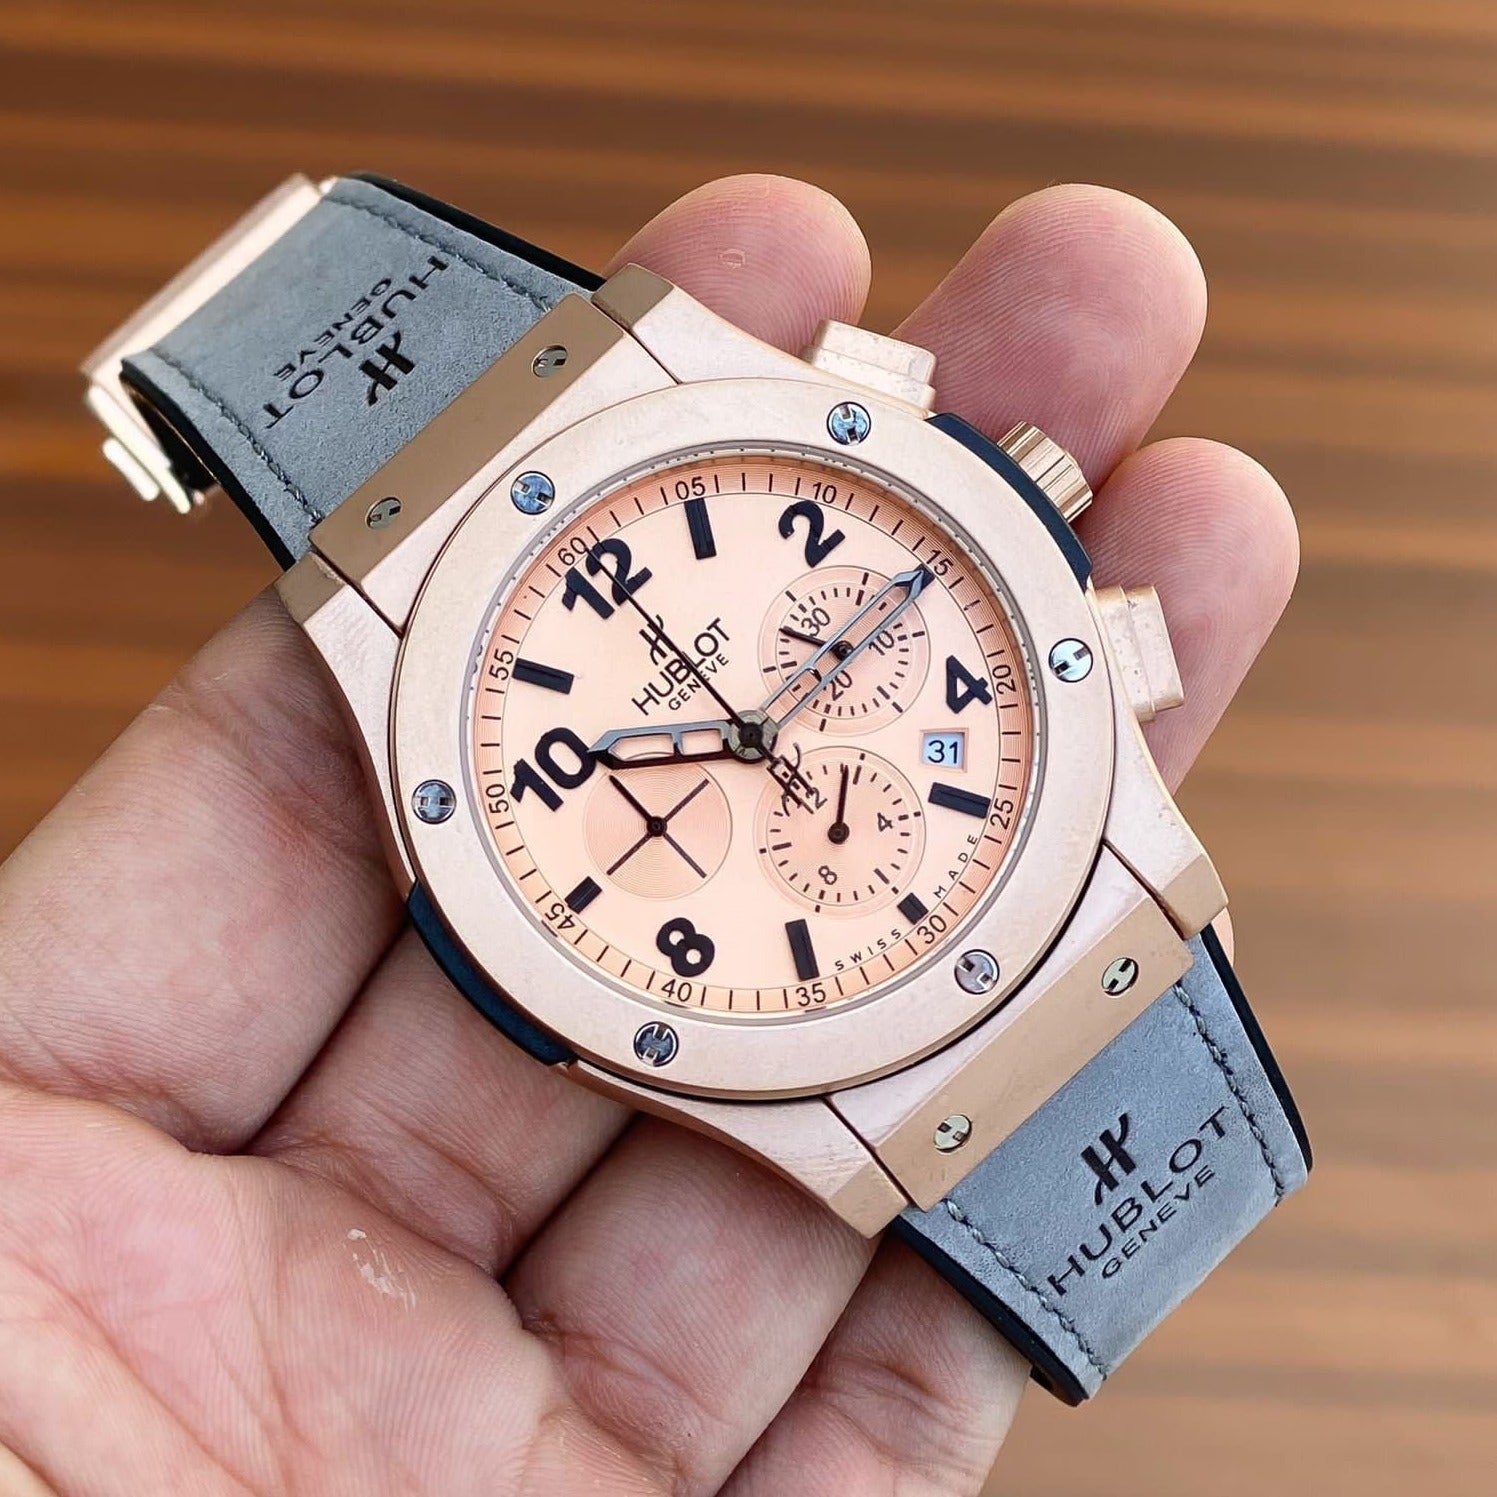 Amazing Big bang Premium Model watch - AmazingBaba